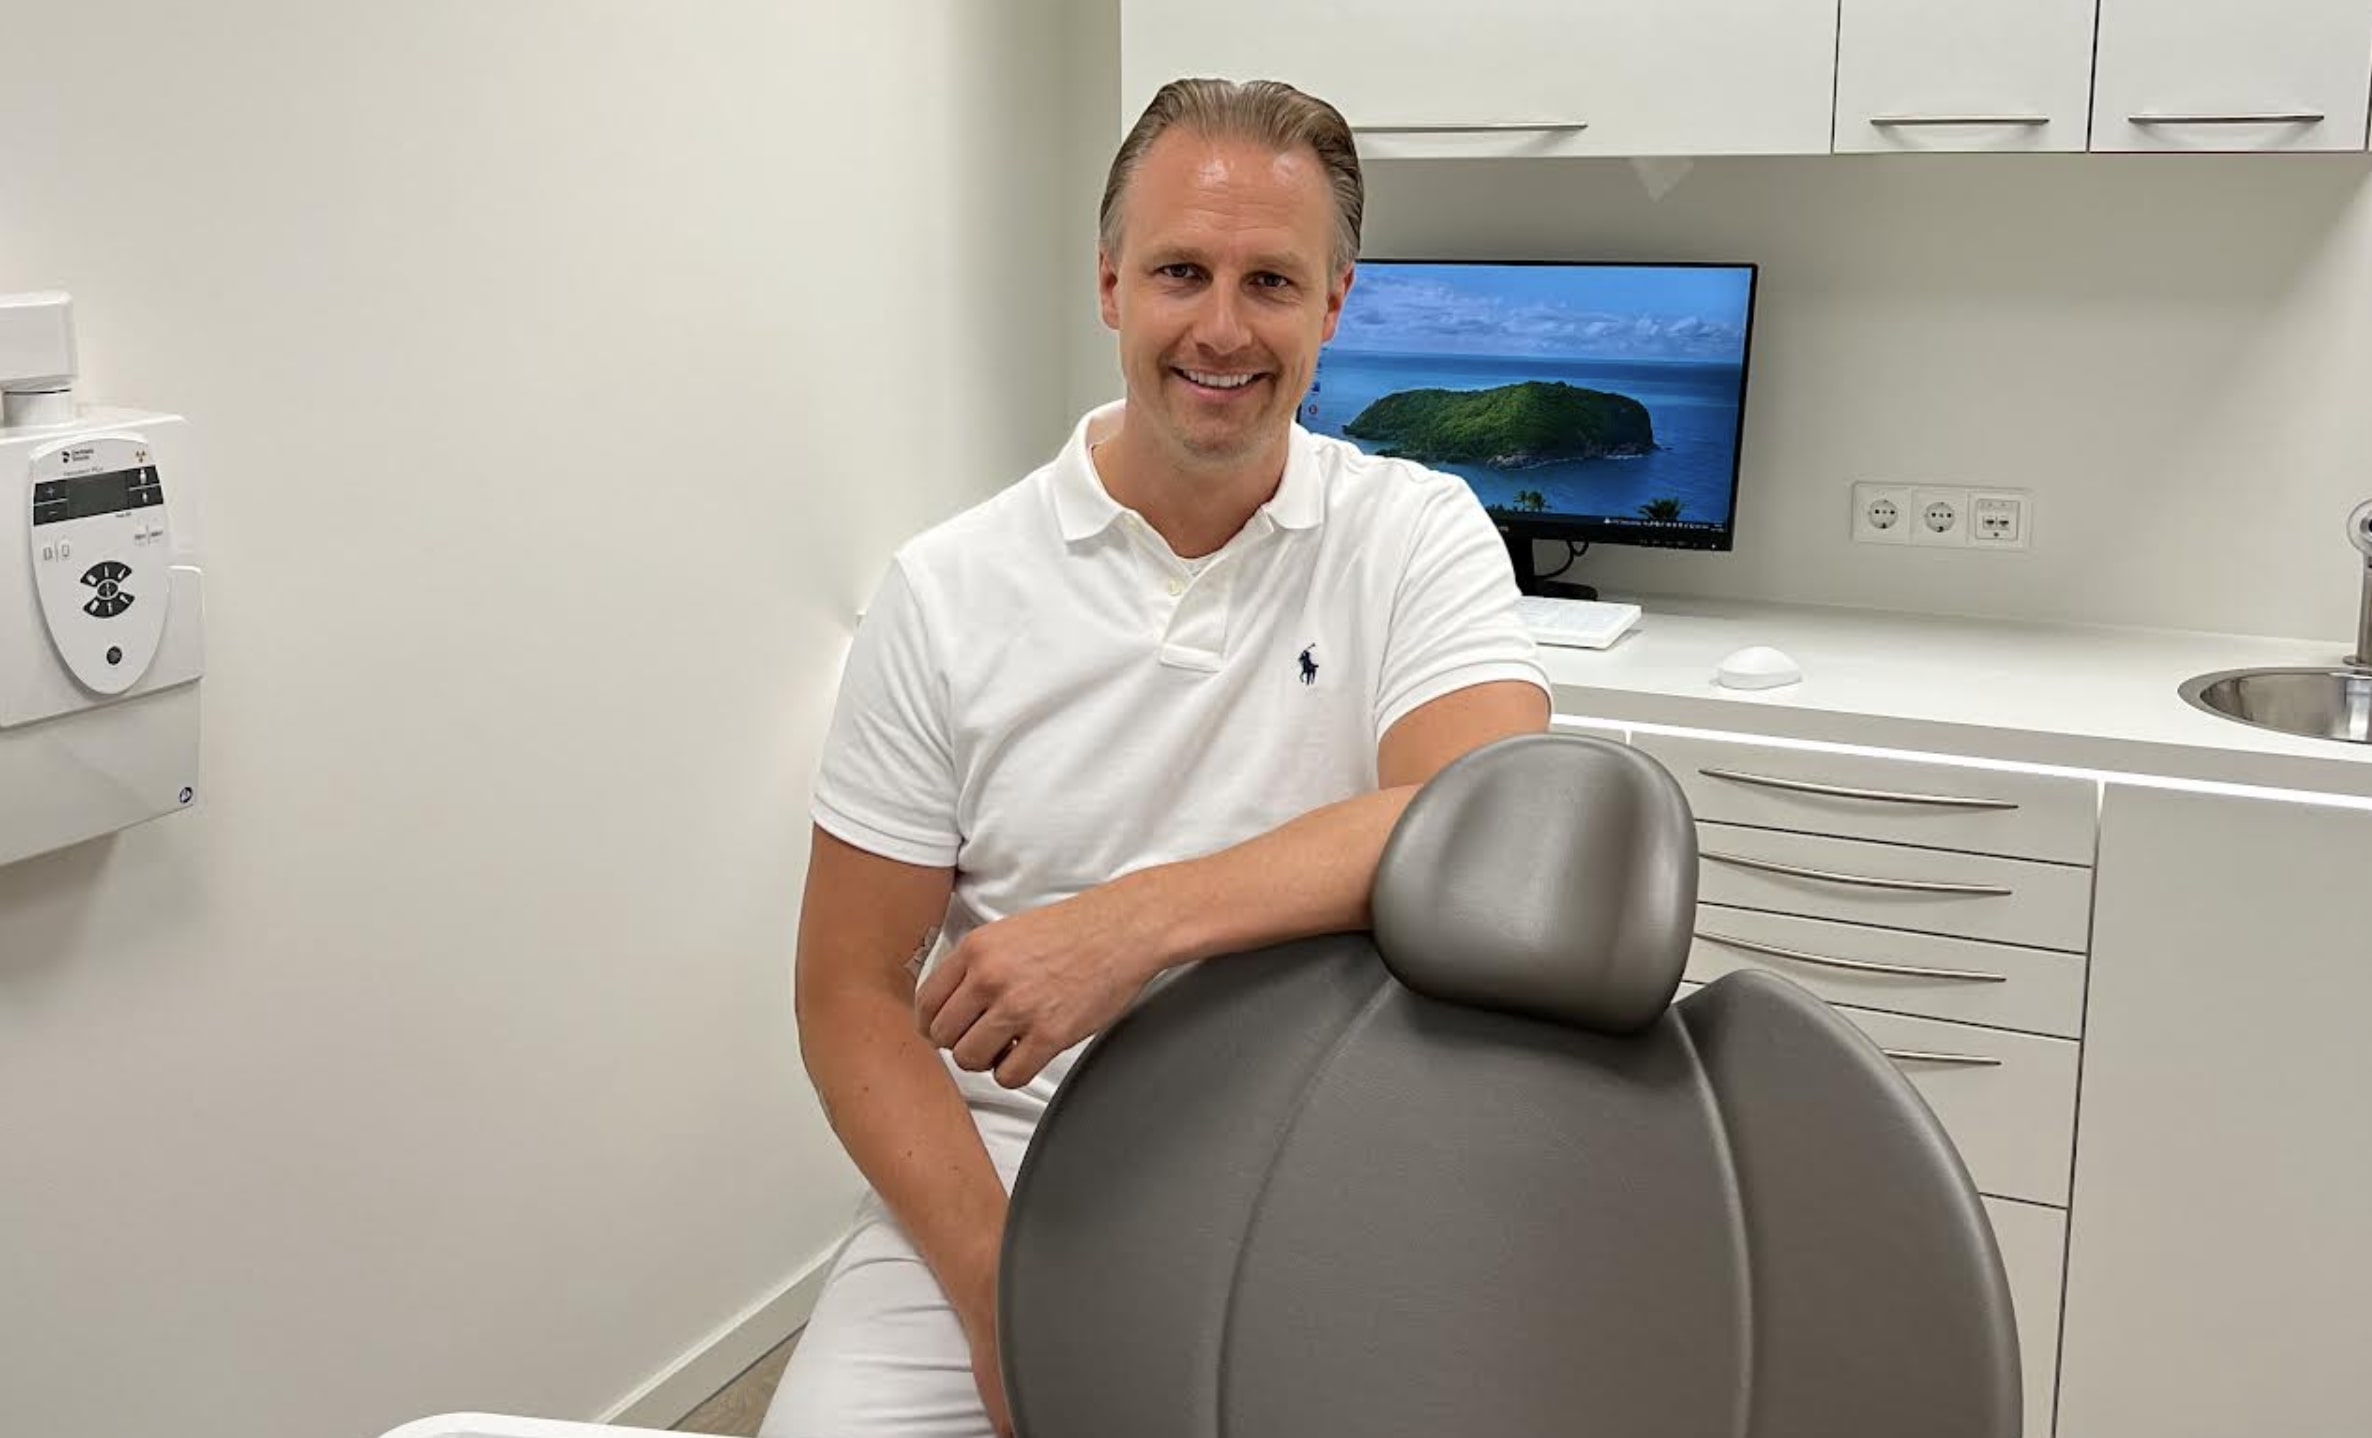 Kiespijn of een afgebroken vulling op vakantie: tandarts legt uit wat je kunt doen